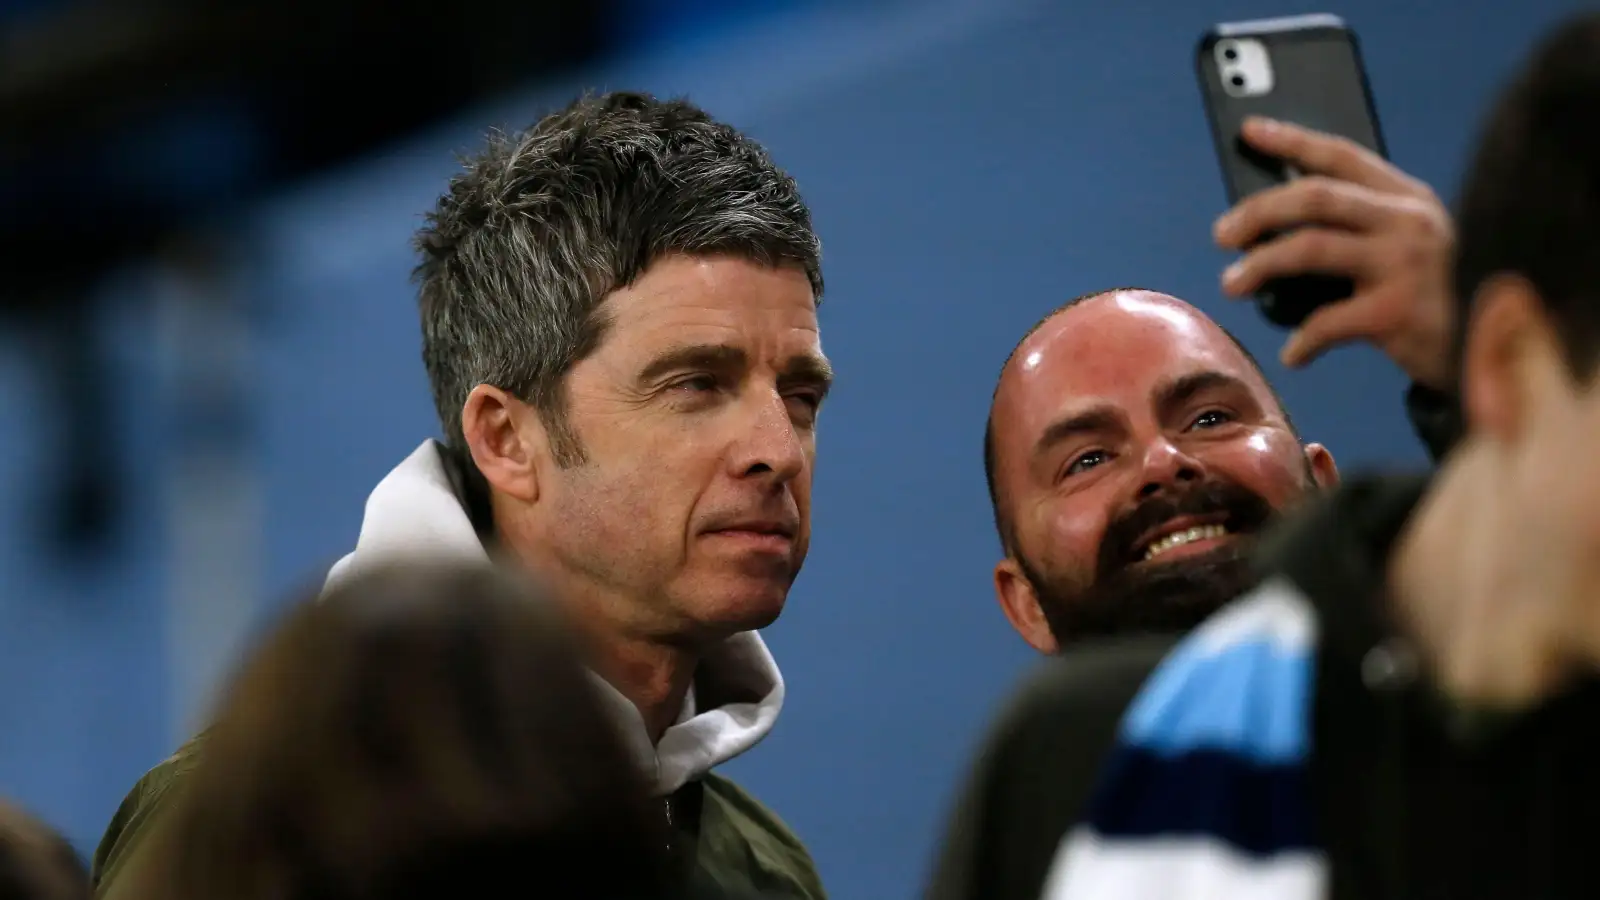 Noel Gallagher takes a selfie with a fan